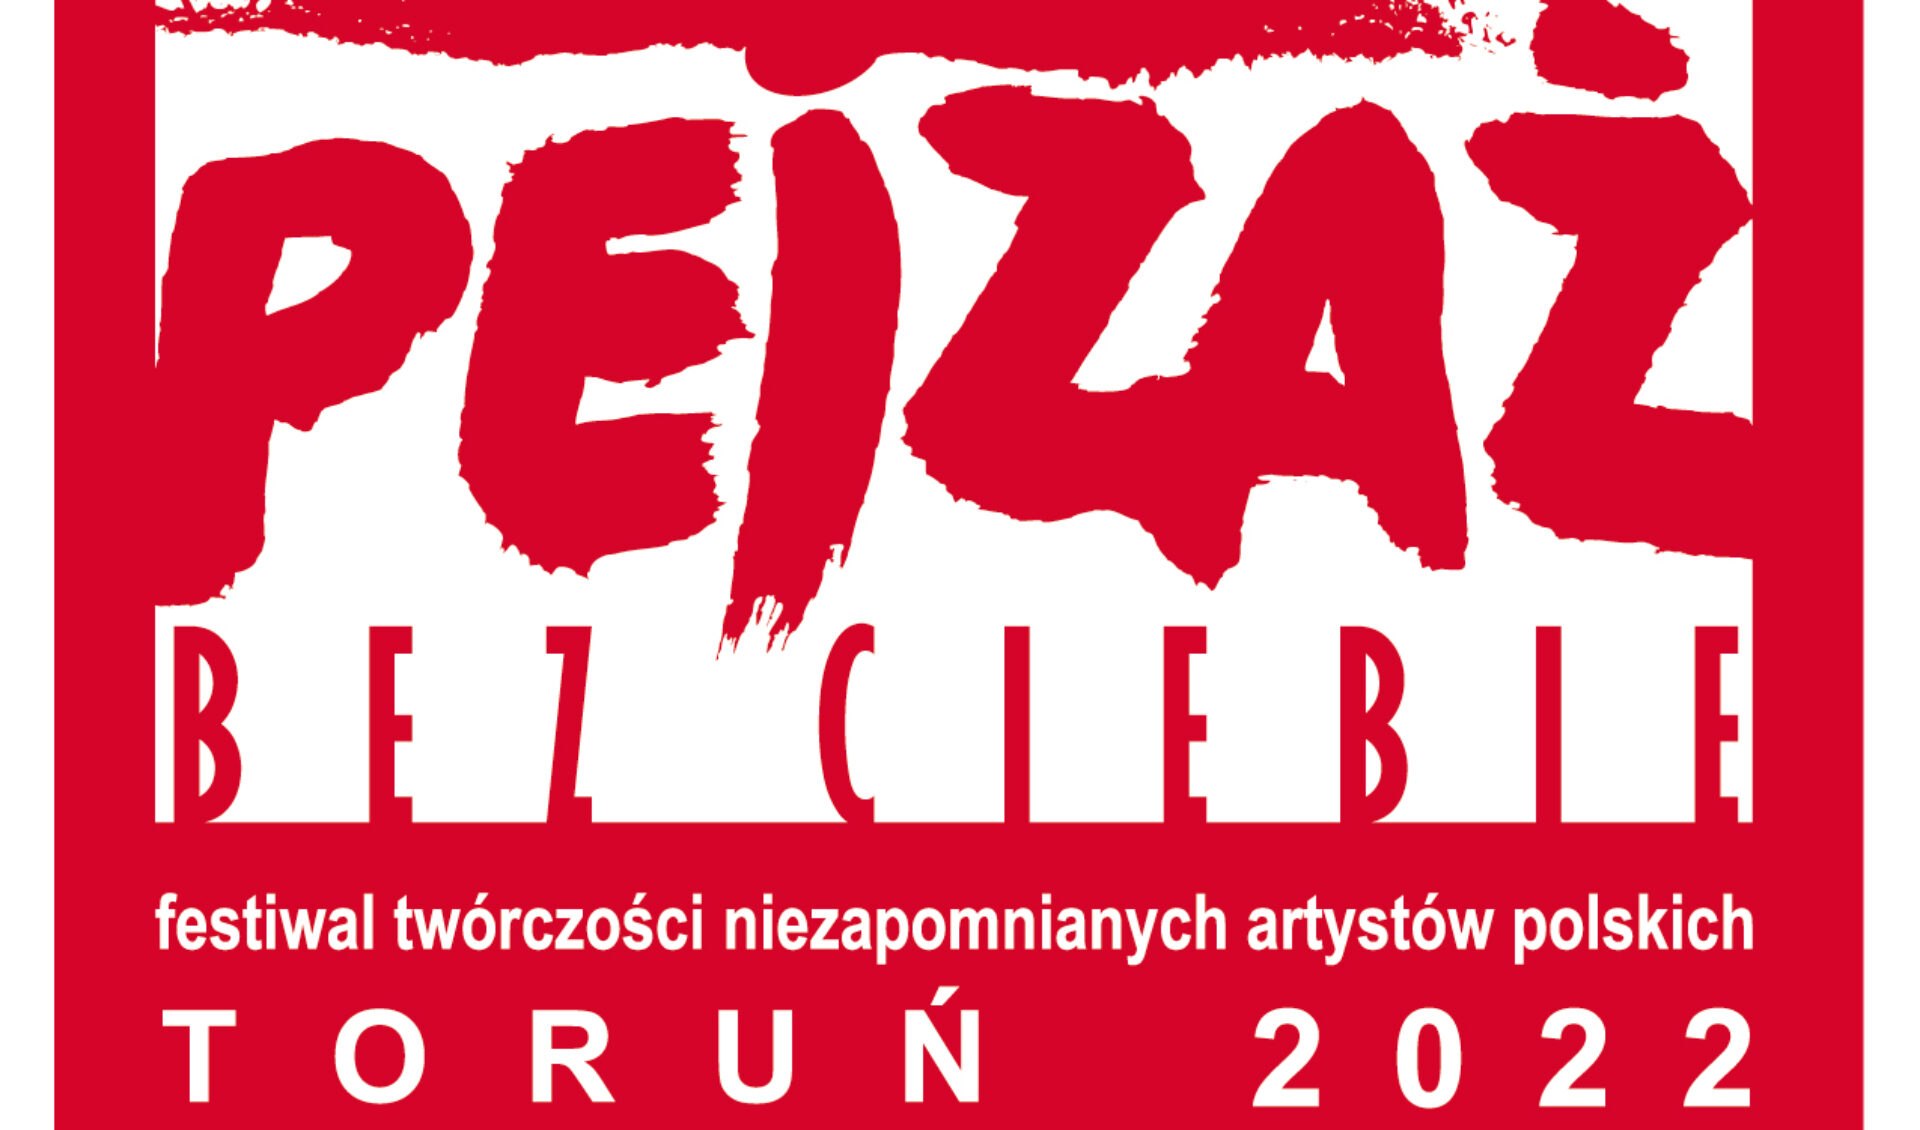 XVIII Festiwal Twórczości Niezapomnianych Artystów Polskich Pejzaż bez Ciebie: Bogusław Mec